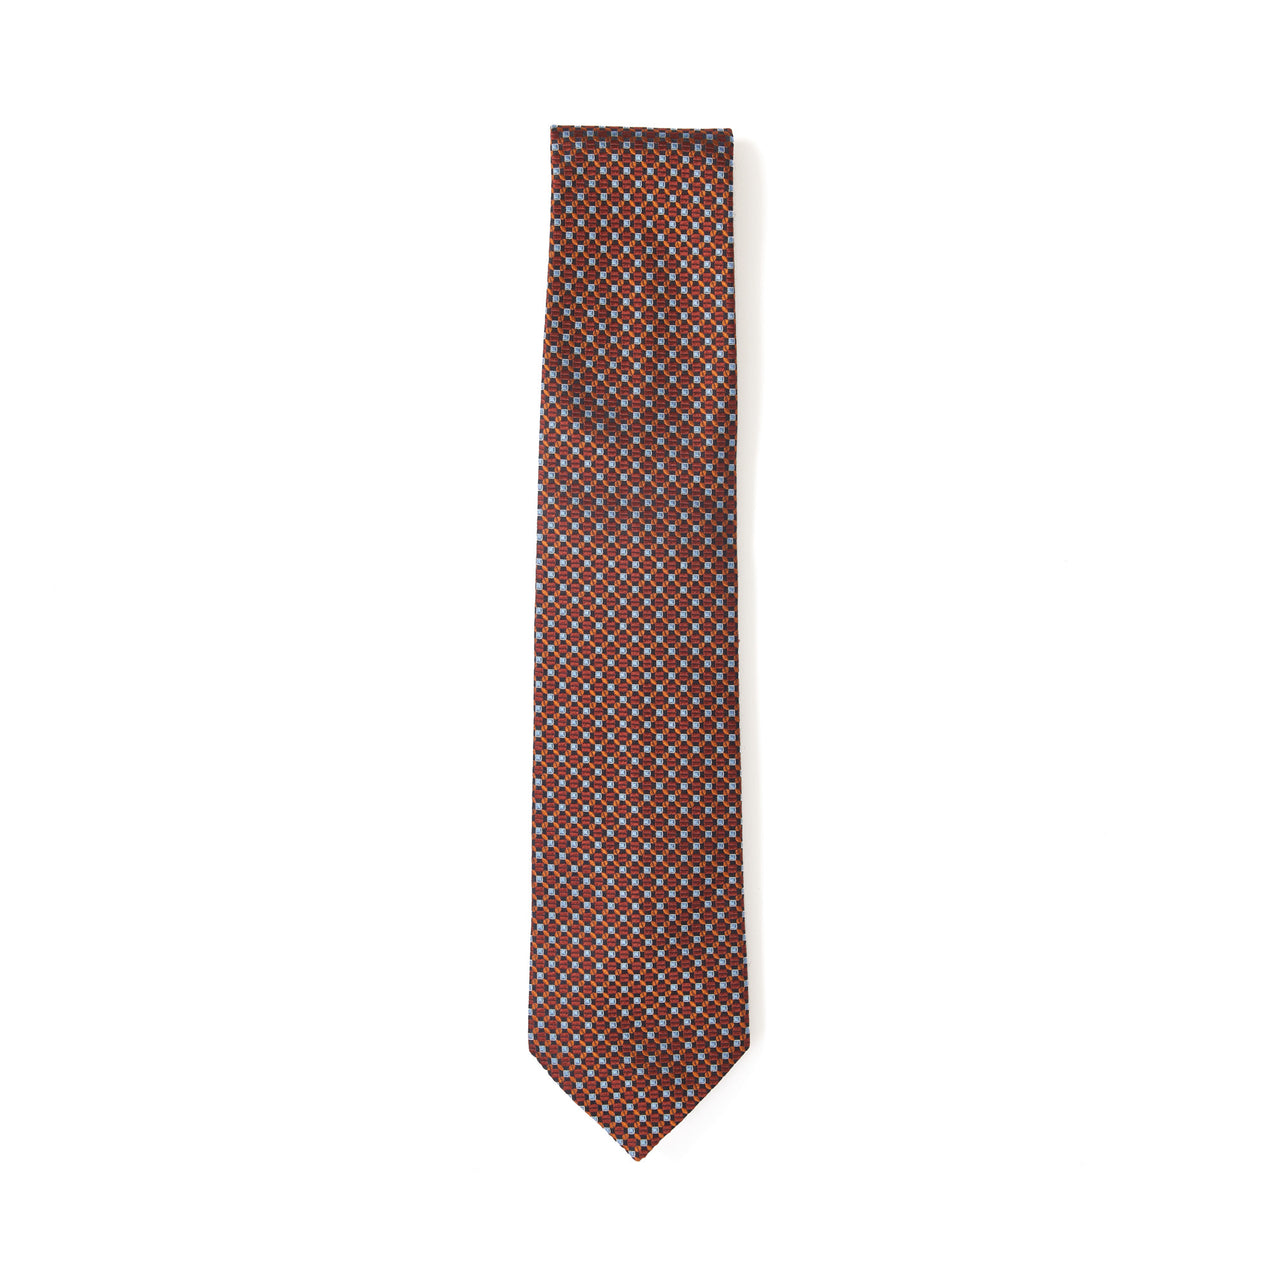 HENRY SARTORIAL 100% Silk Jacquard Tie RED